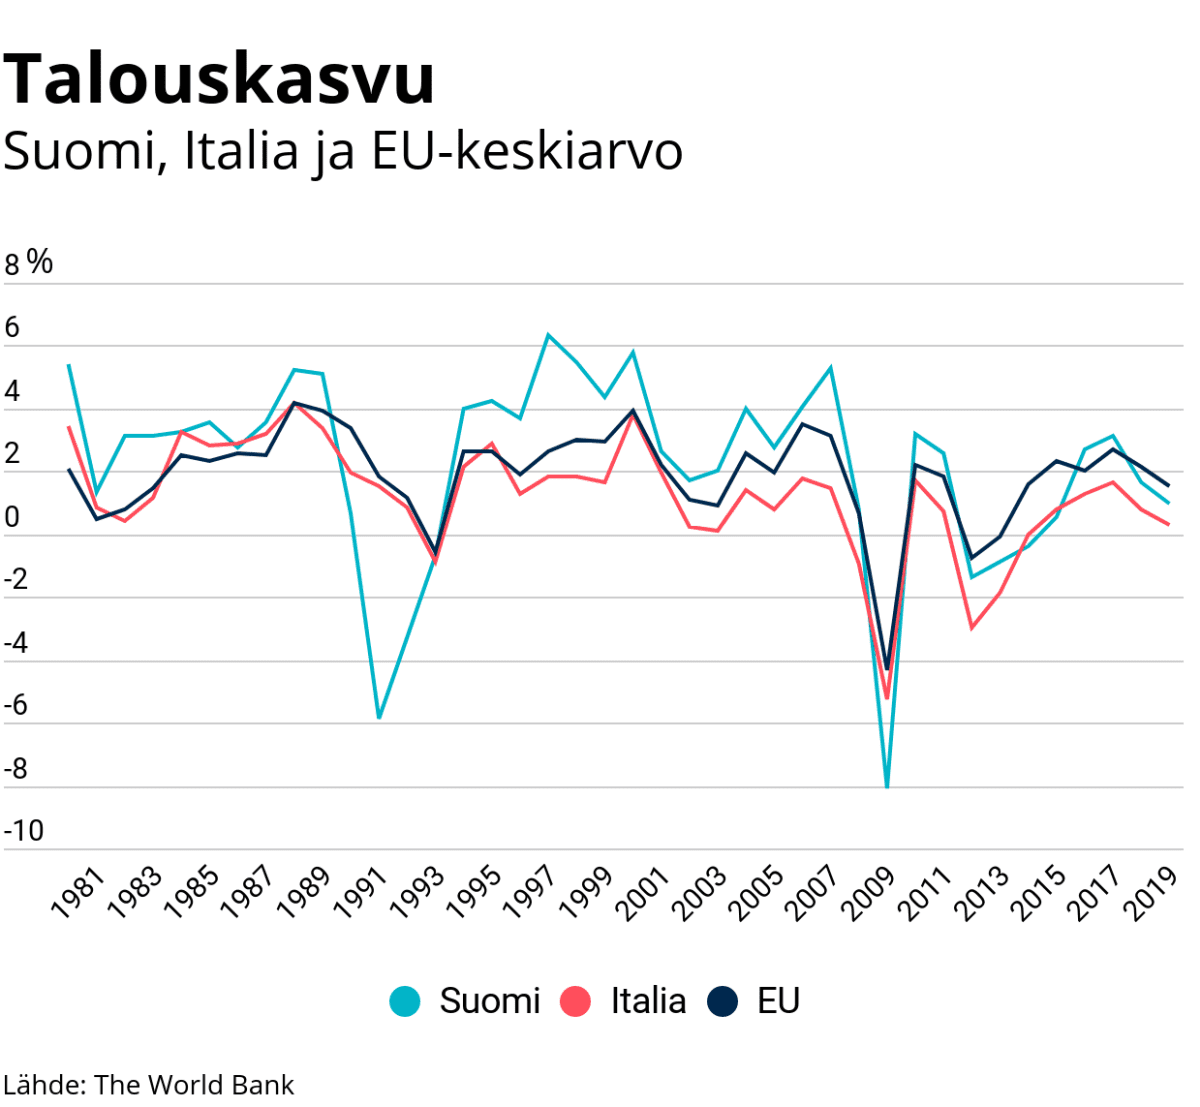 Tilastografiikka talouskasvusta Suomessa, Italiassa ja EU:n keskiarvo.